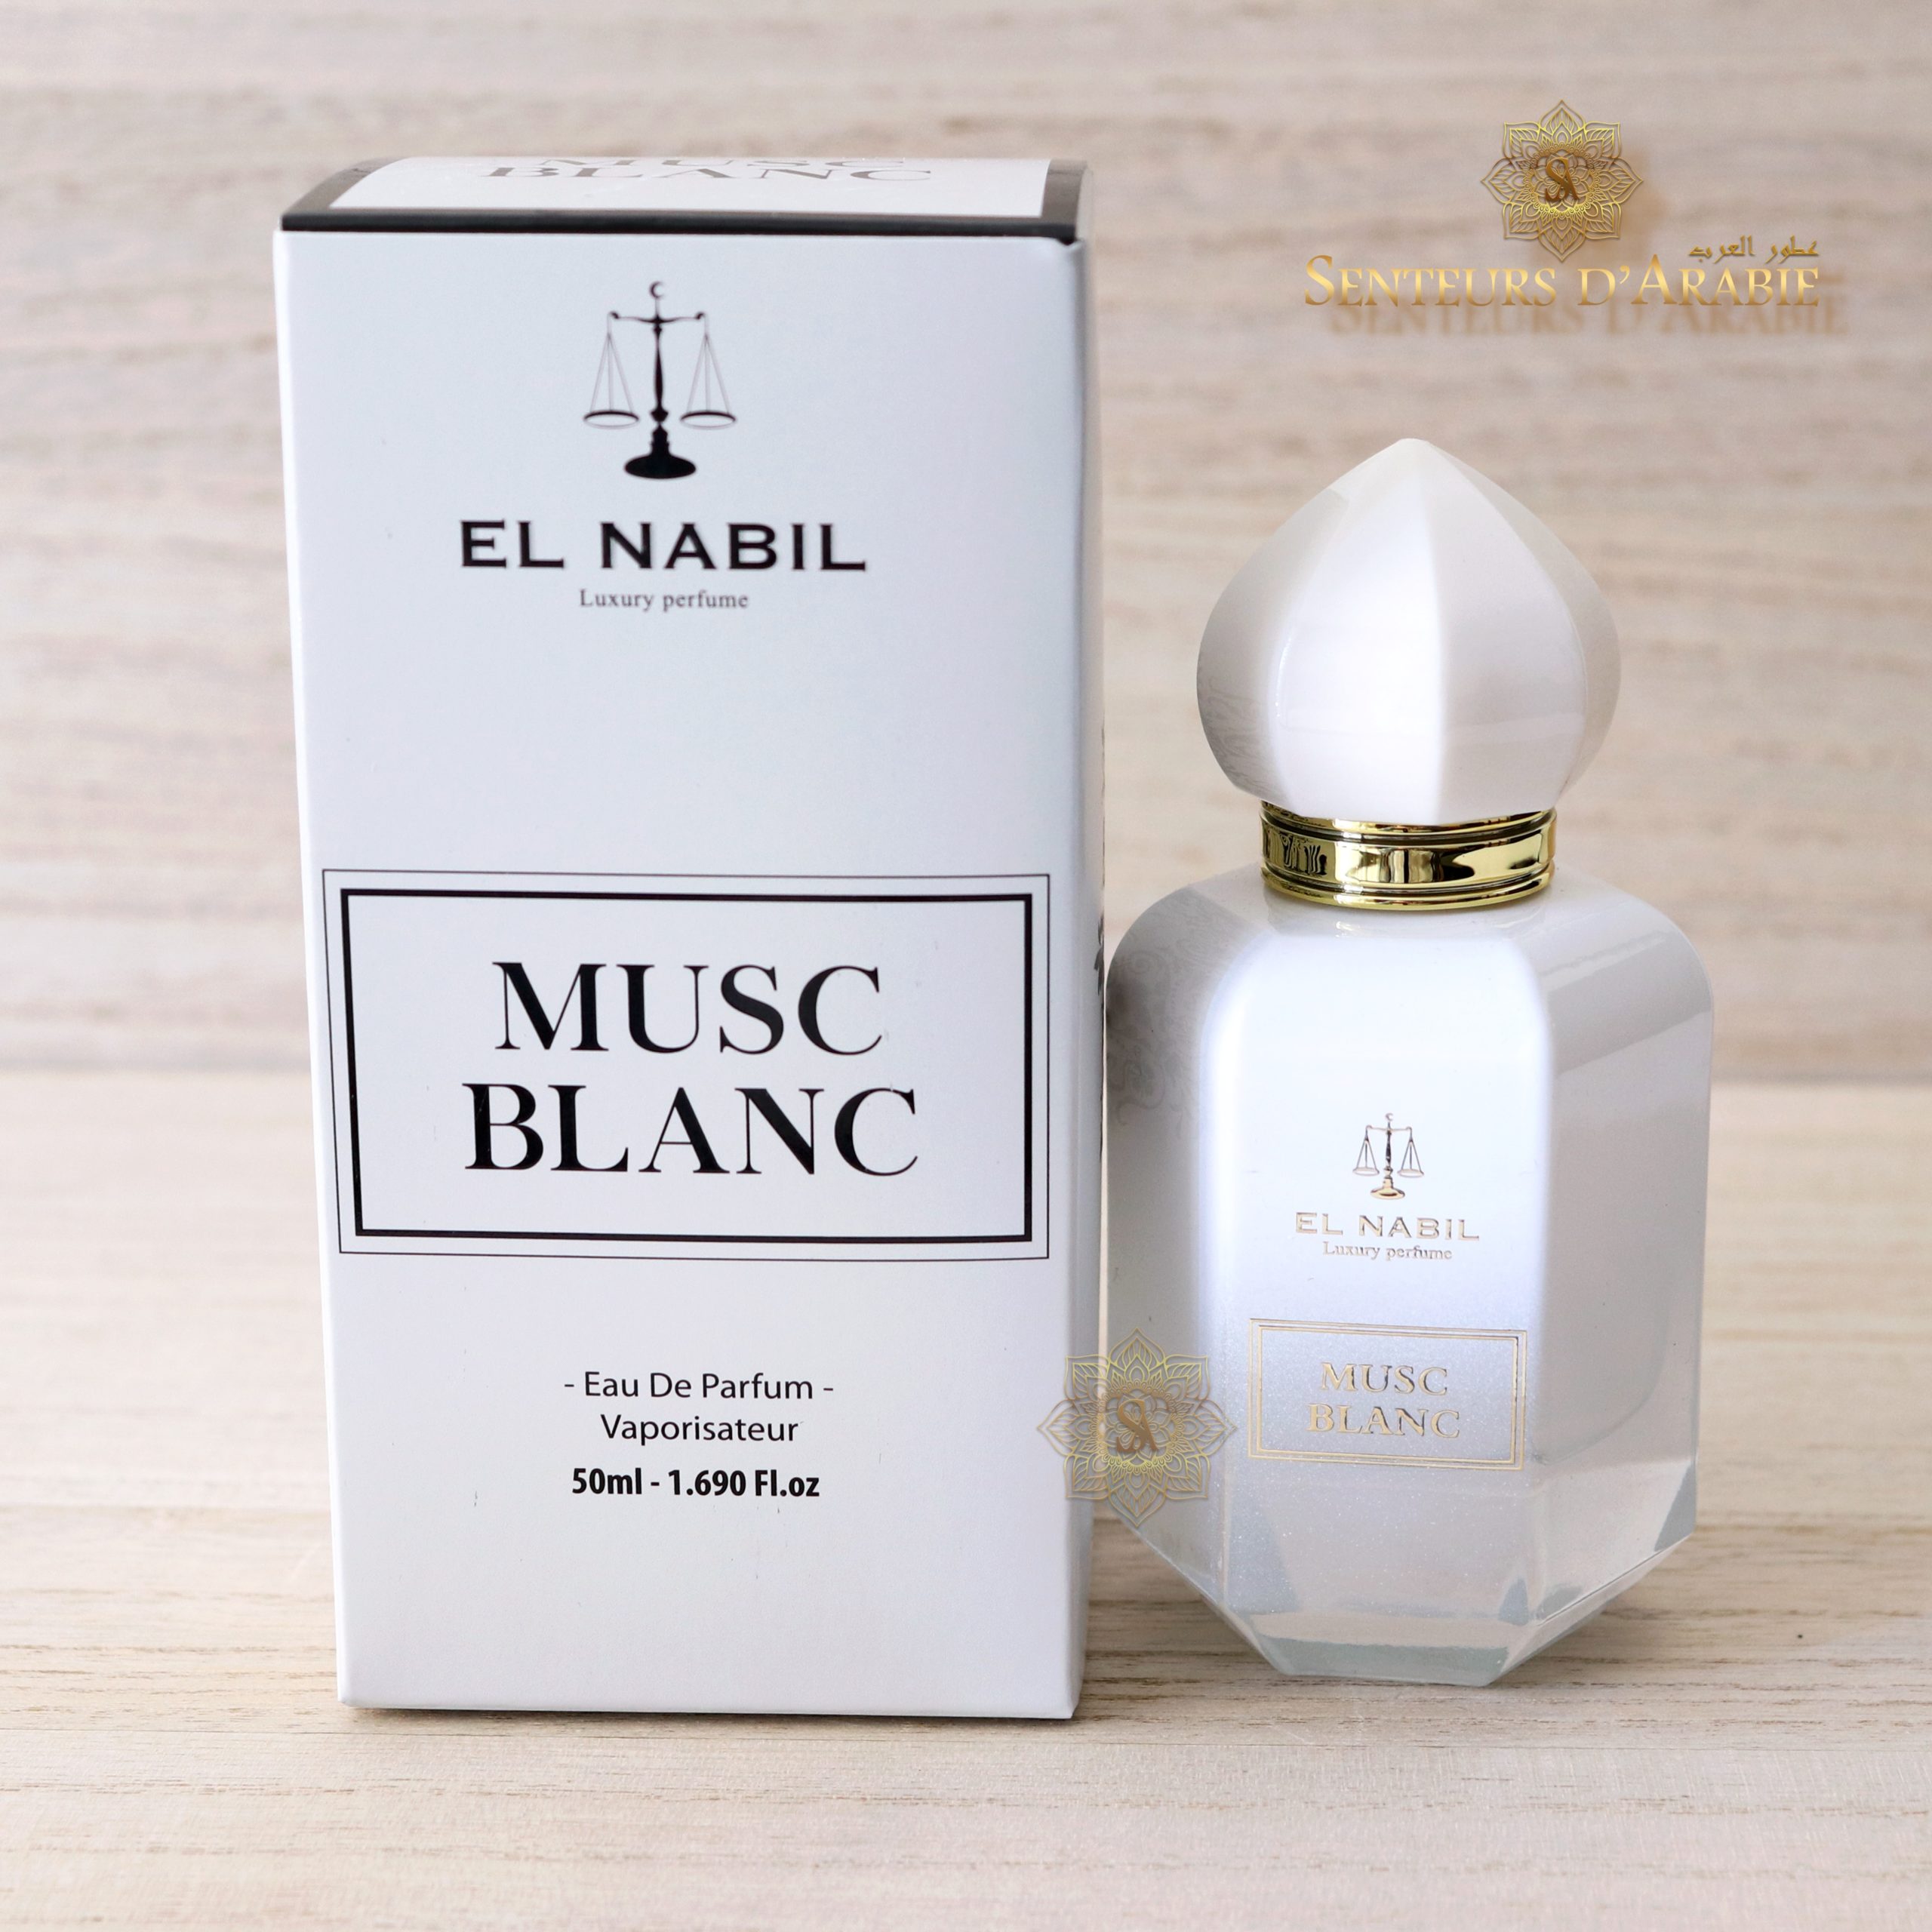 Eau de parfum EL Nabil MUSC BLANC 65ML white musk - Cdiscount Au quotidien